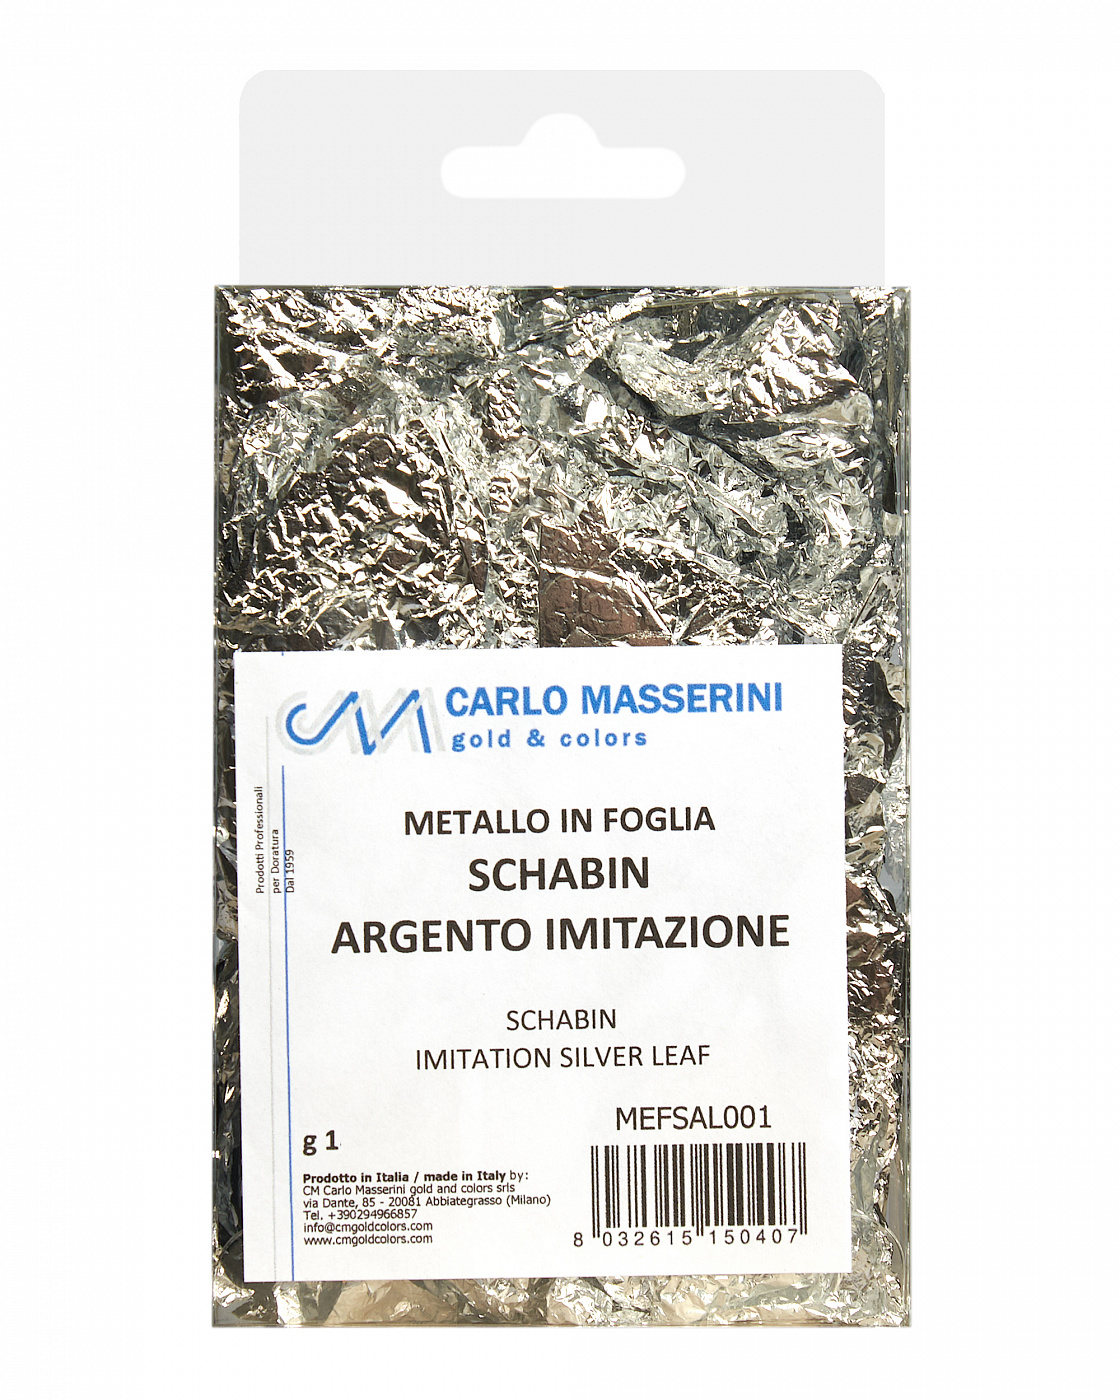 Поталь Masserini имитация серебра шабин (смятые листы) поталь в книжке для серебрения зхк decola 14 х 14 см 25 листов имитация серебра плотность 0 03 мкн 2061291389